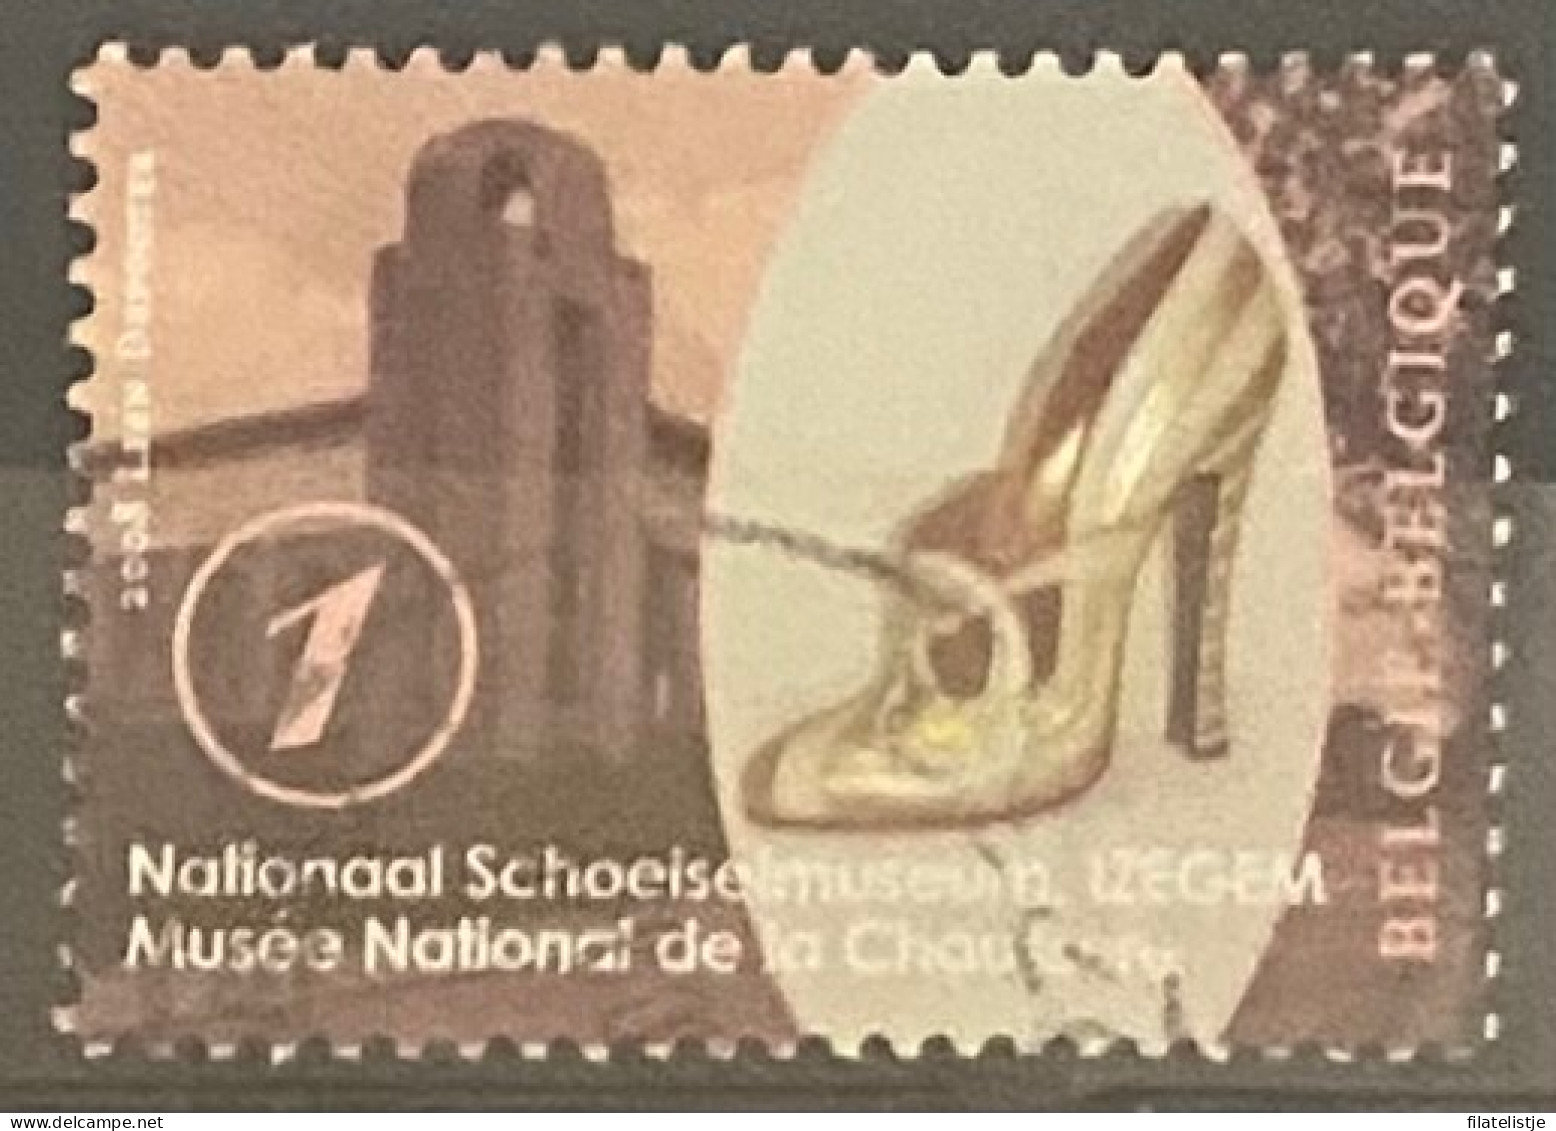 België Zegelnummer 3845 Nationaal Schoenmuseum Izegem - Gebraucht